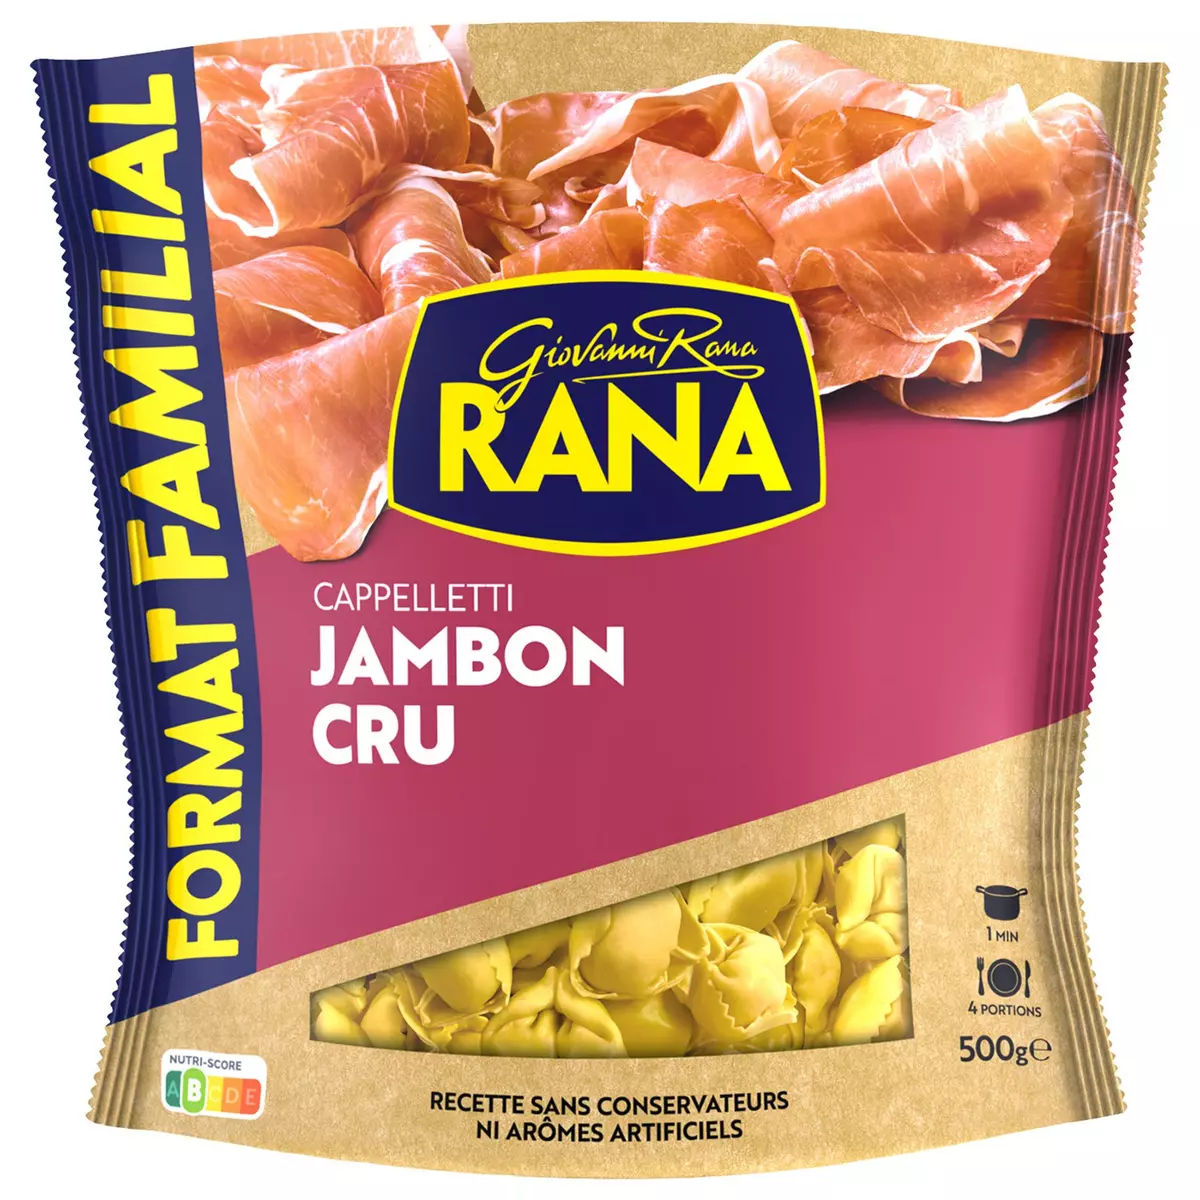 RANA Cappelletti jambon cru 2 portions 500g